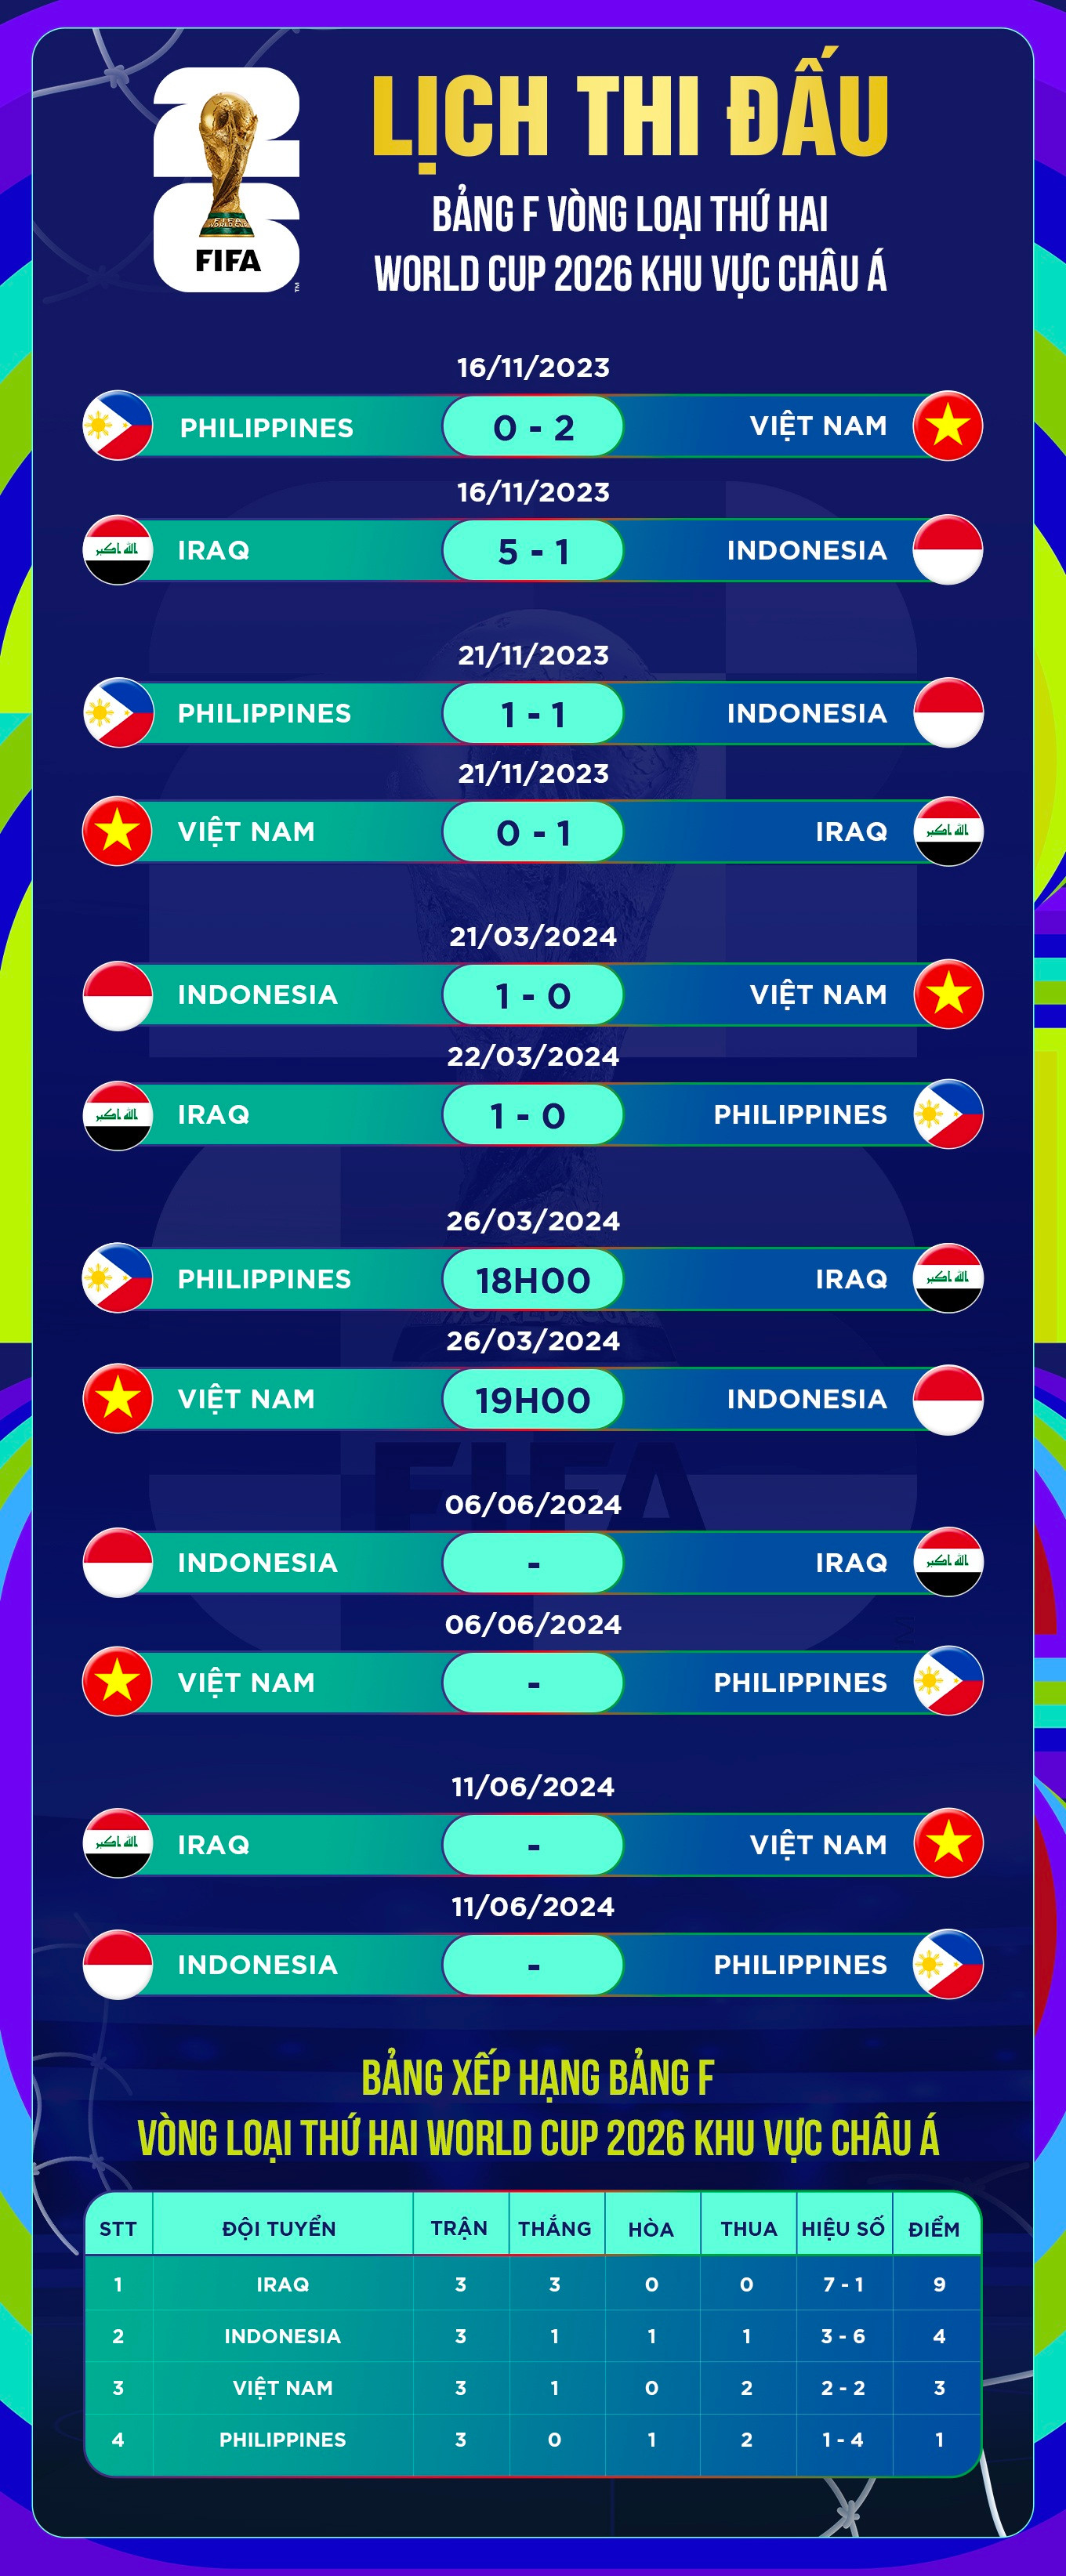 Đội tuyển Việt Nam cần học hỏi cách sử dụng nhân sự của Indonesia, Thái Lan - 3